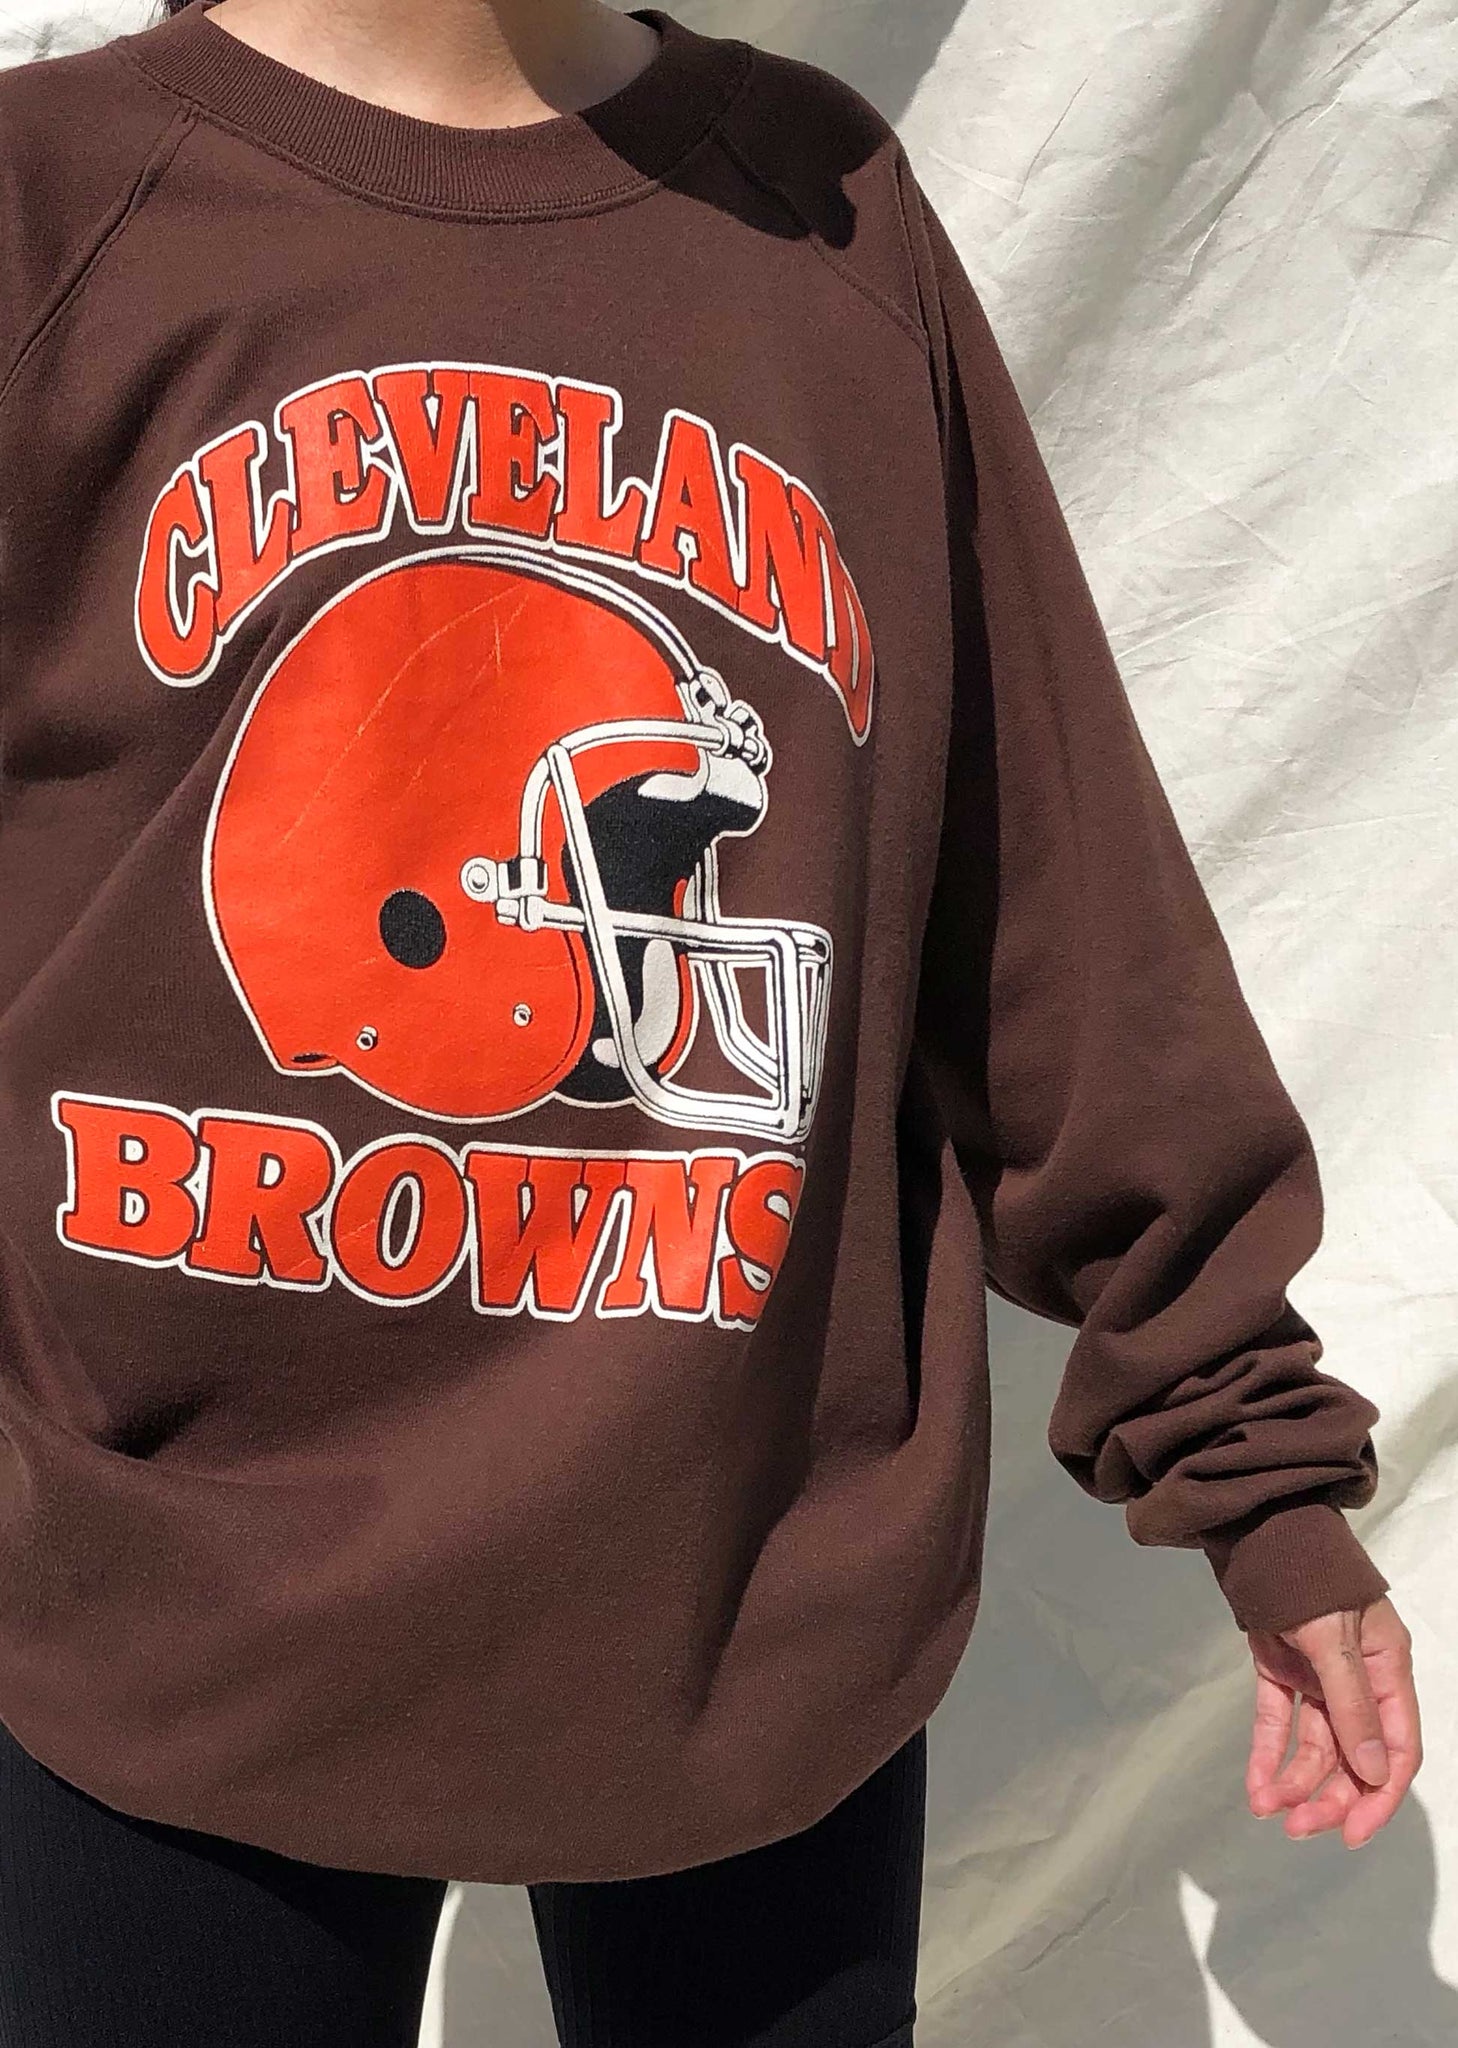 cleveland browns retro sweatshirt